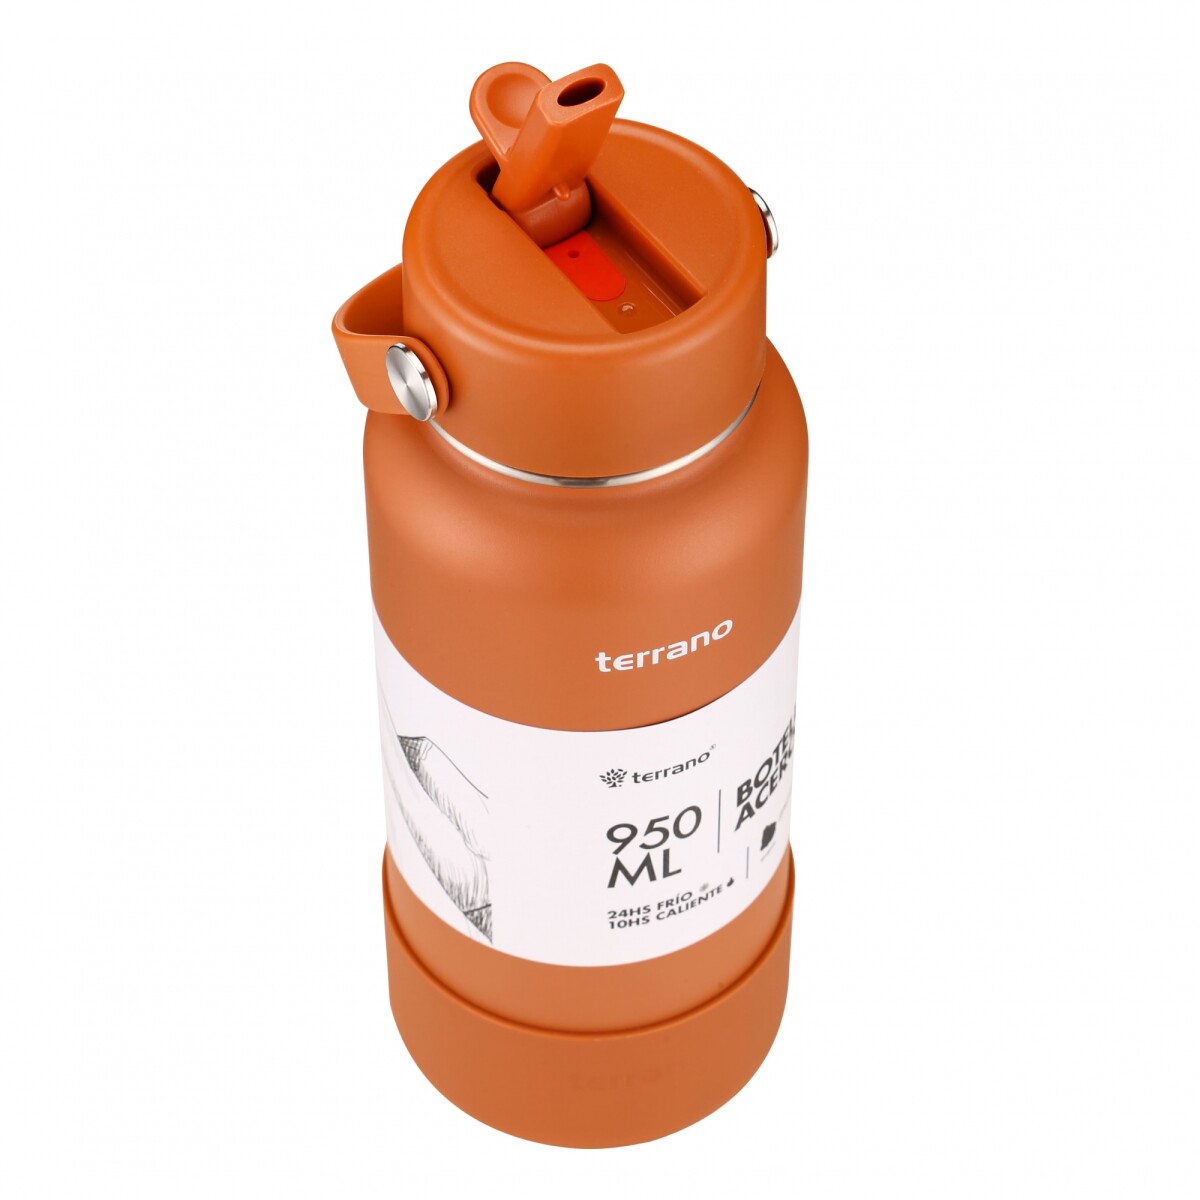 Botella Térmica con Pico 950mL. - Terracota 